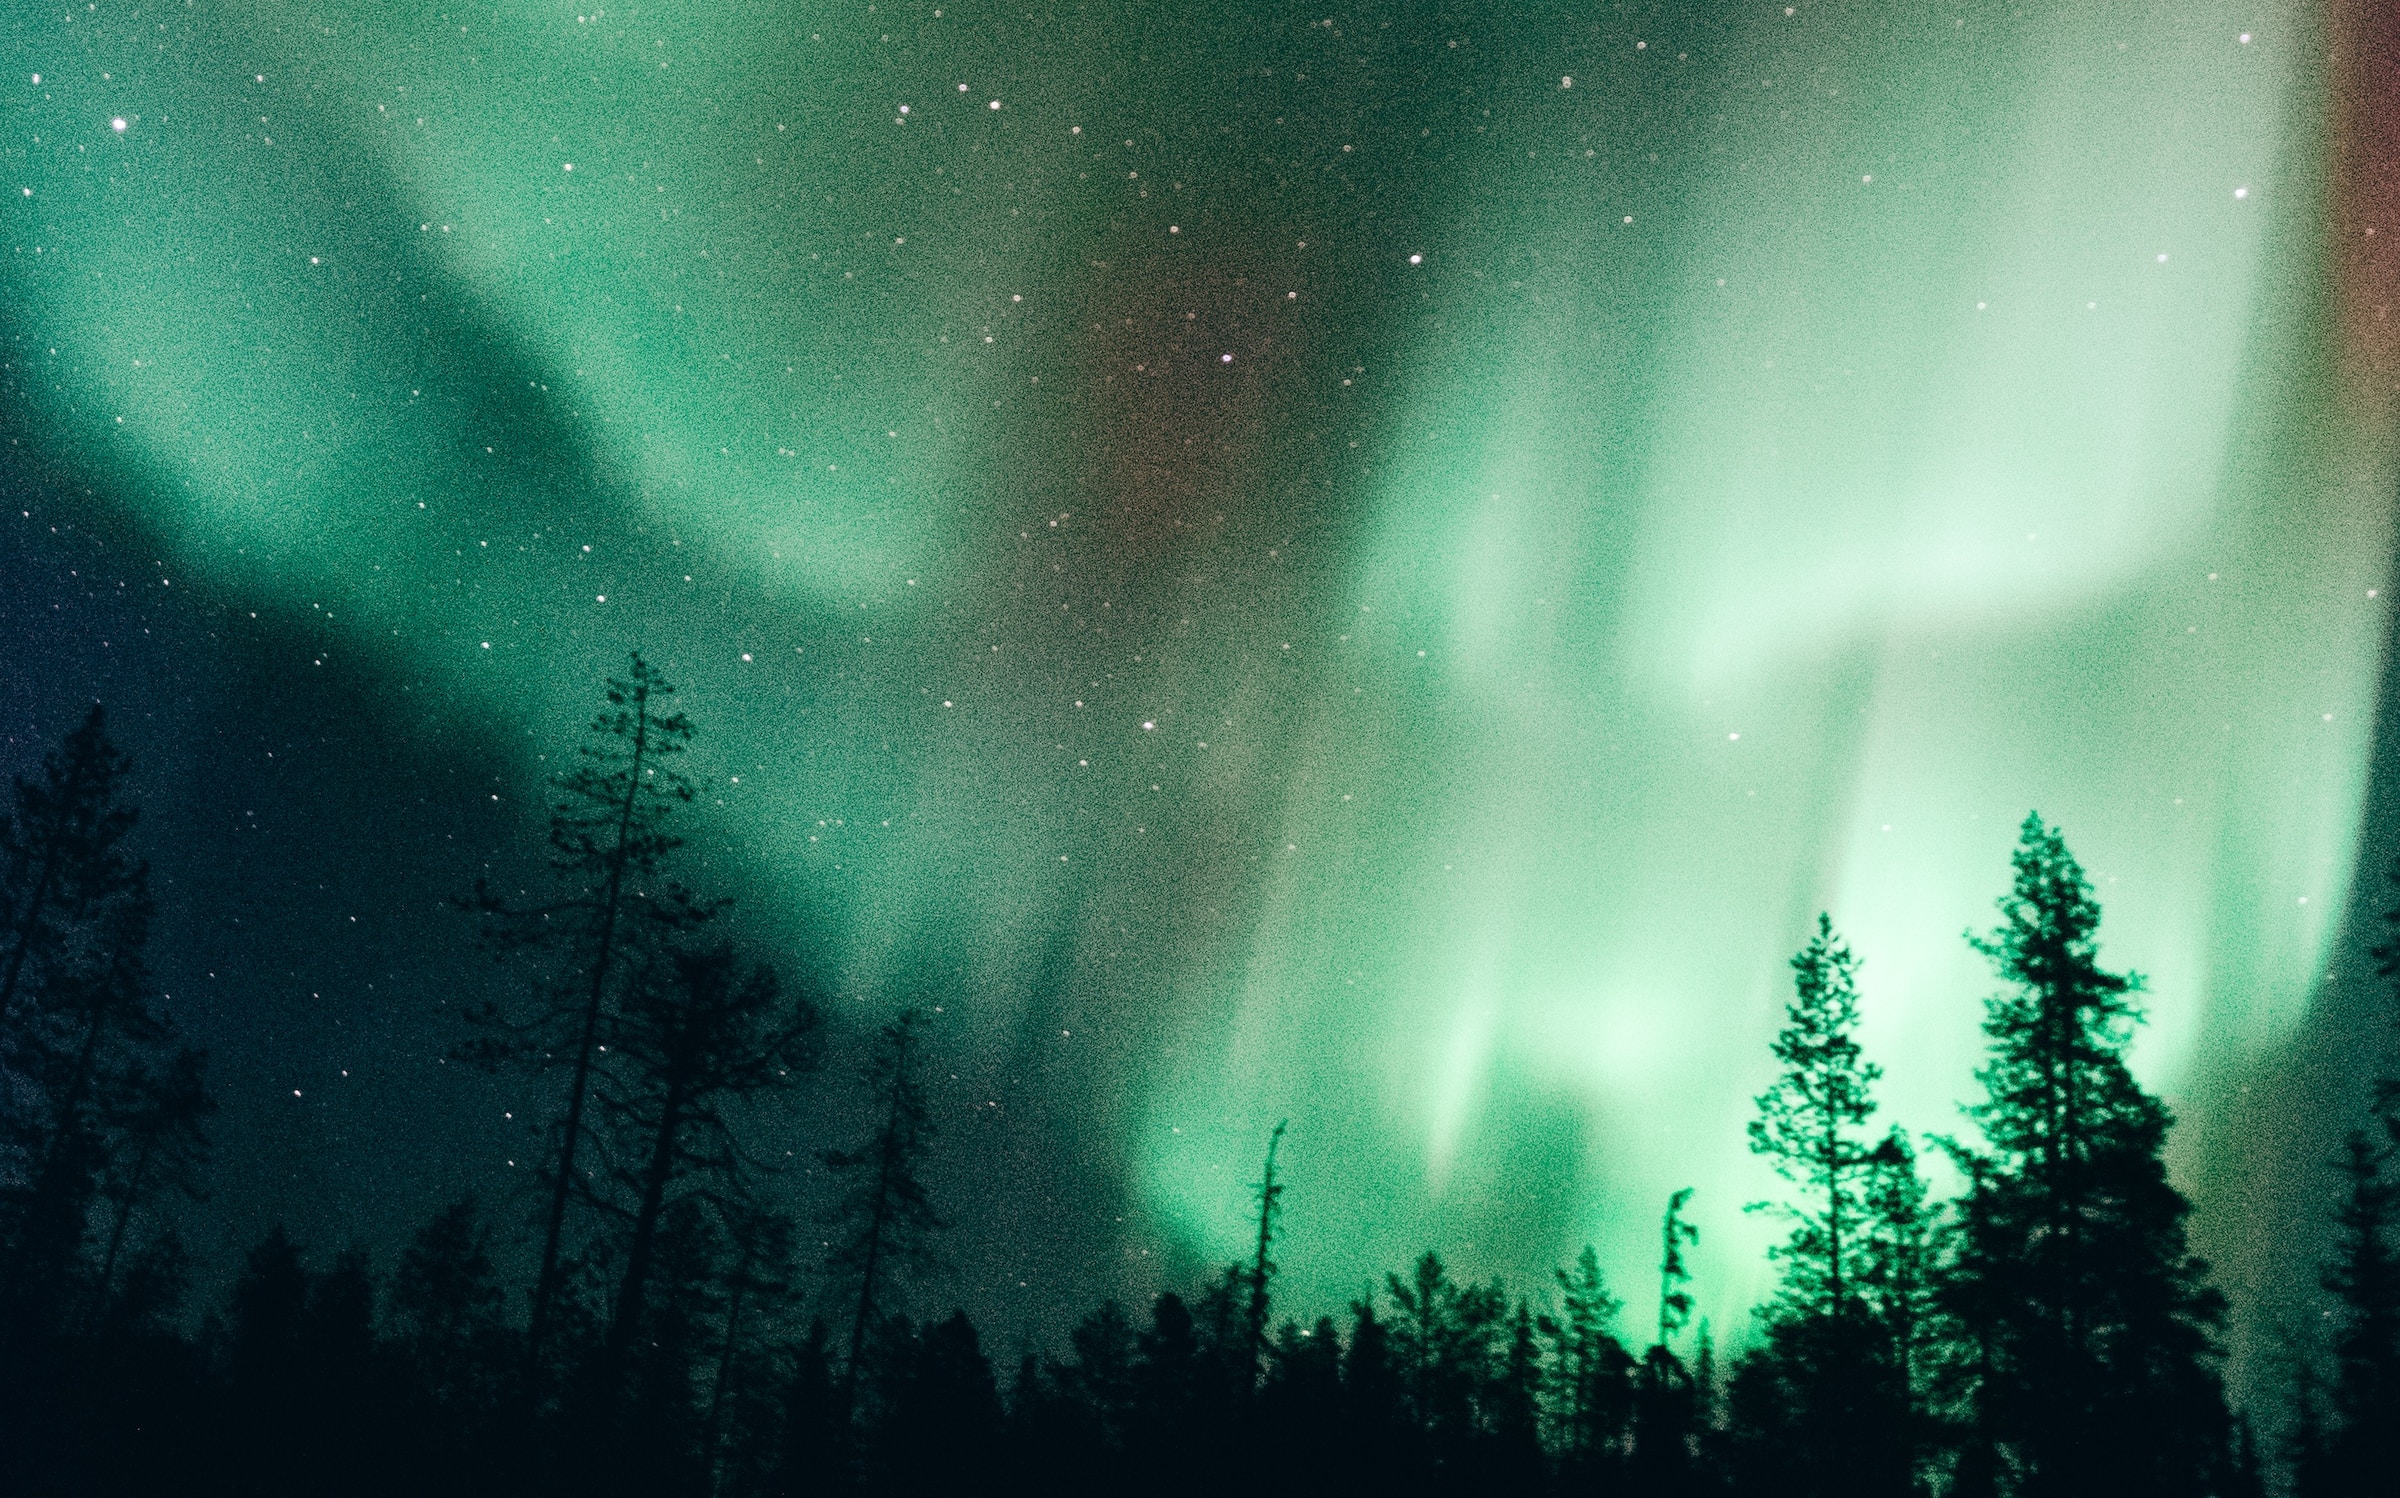 En Alaska, une aurore boréale artificielle illumine le ciel de rouge et de vert